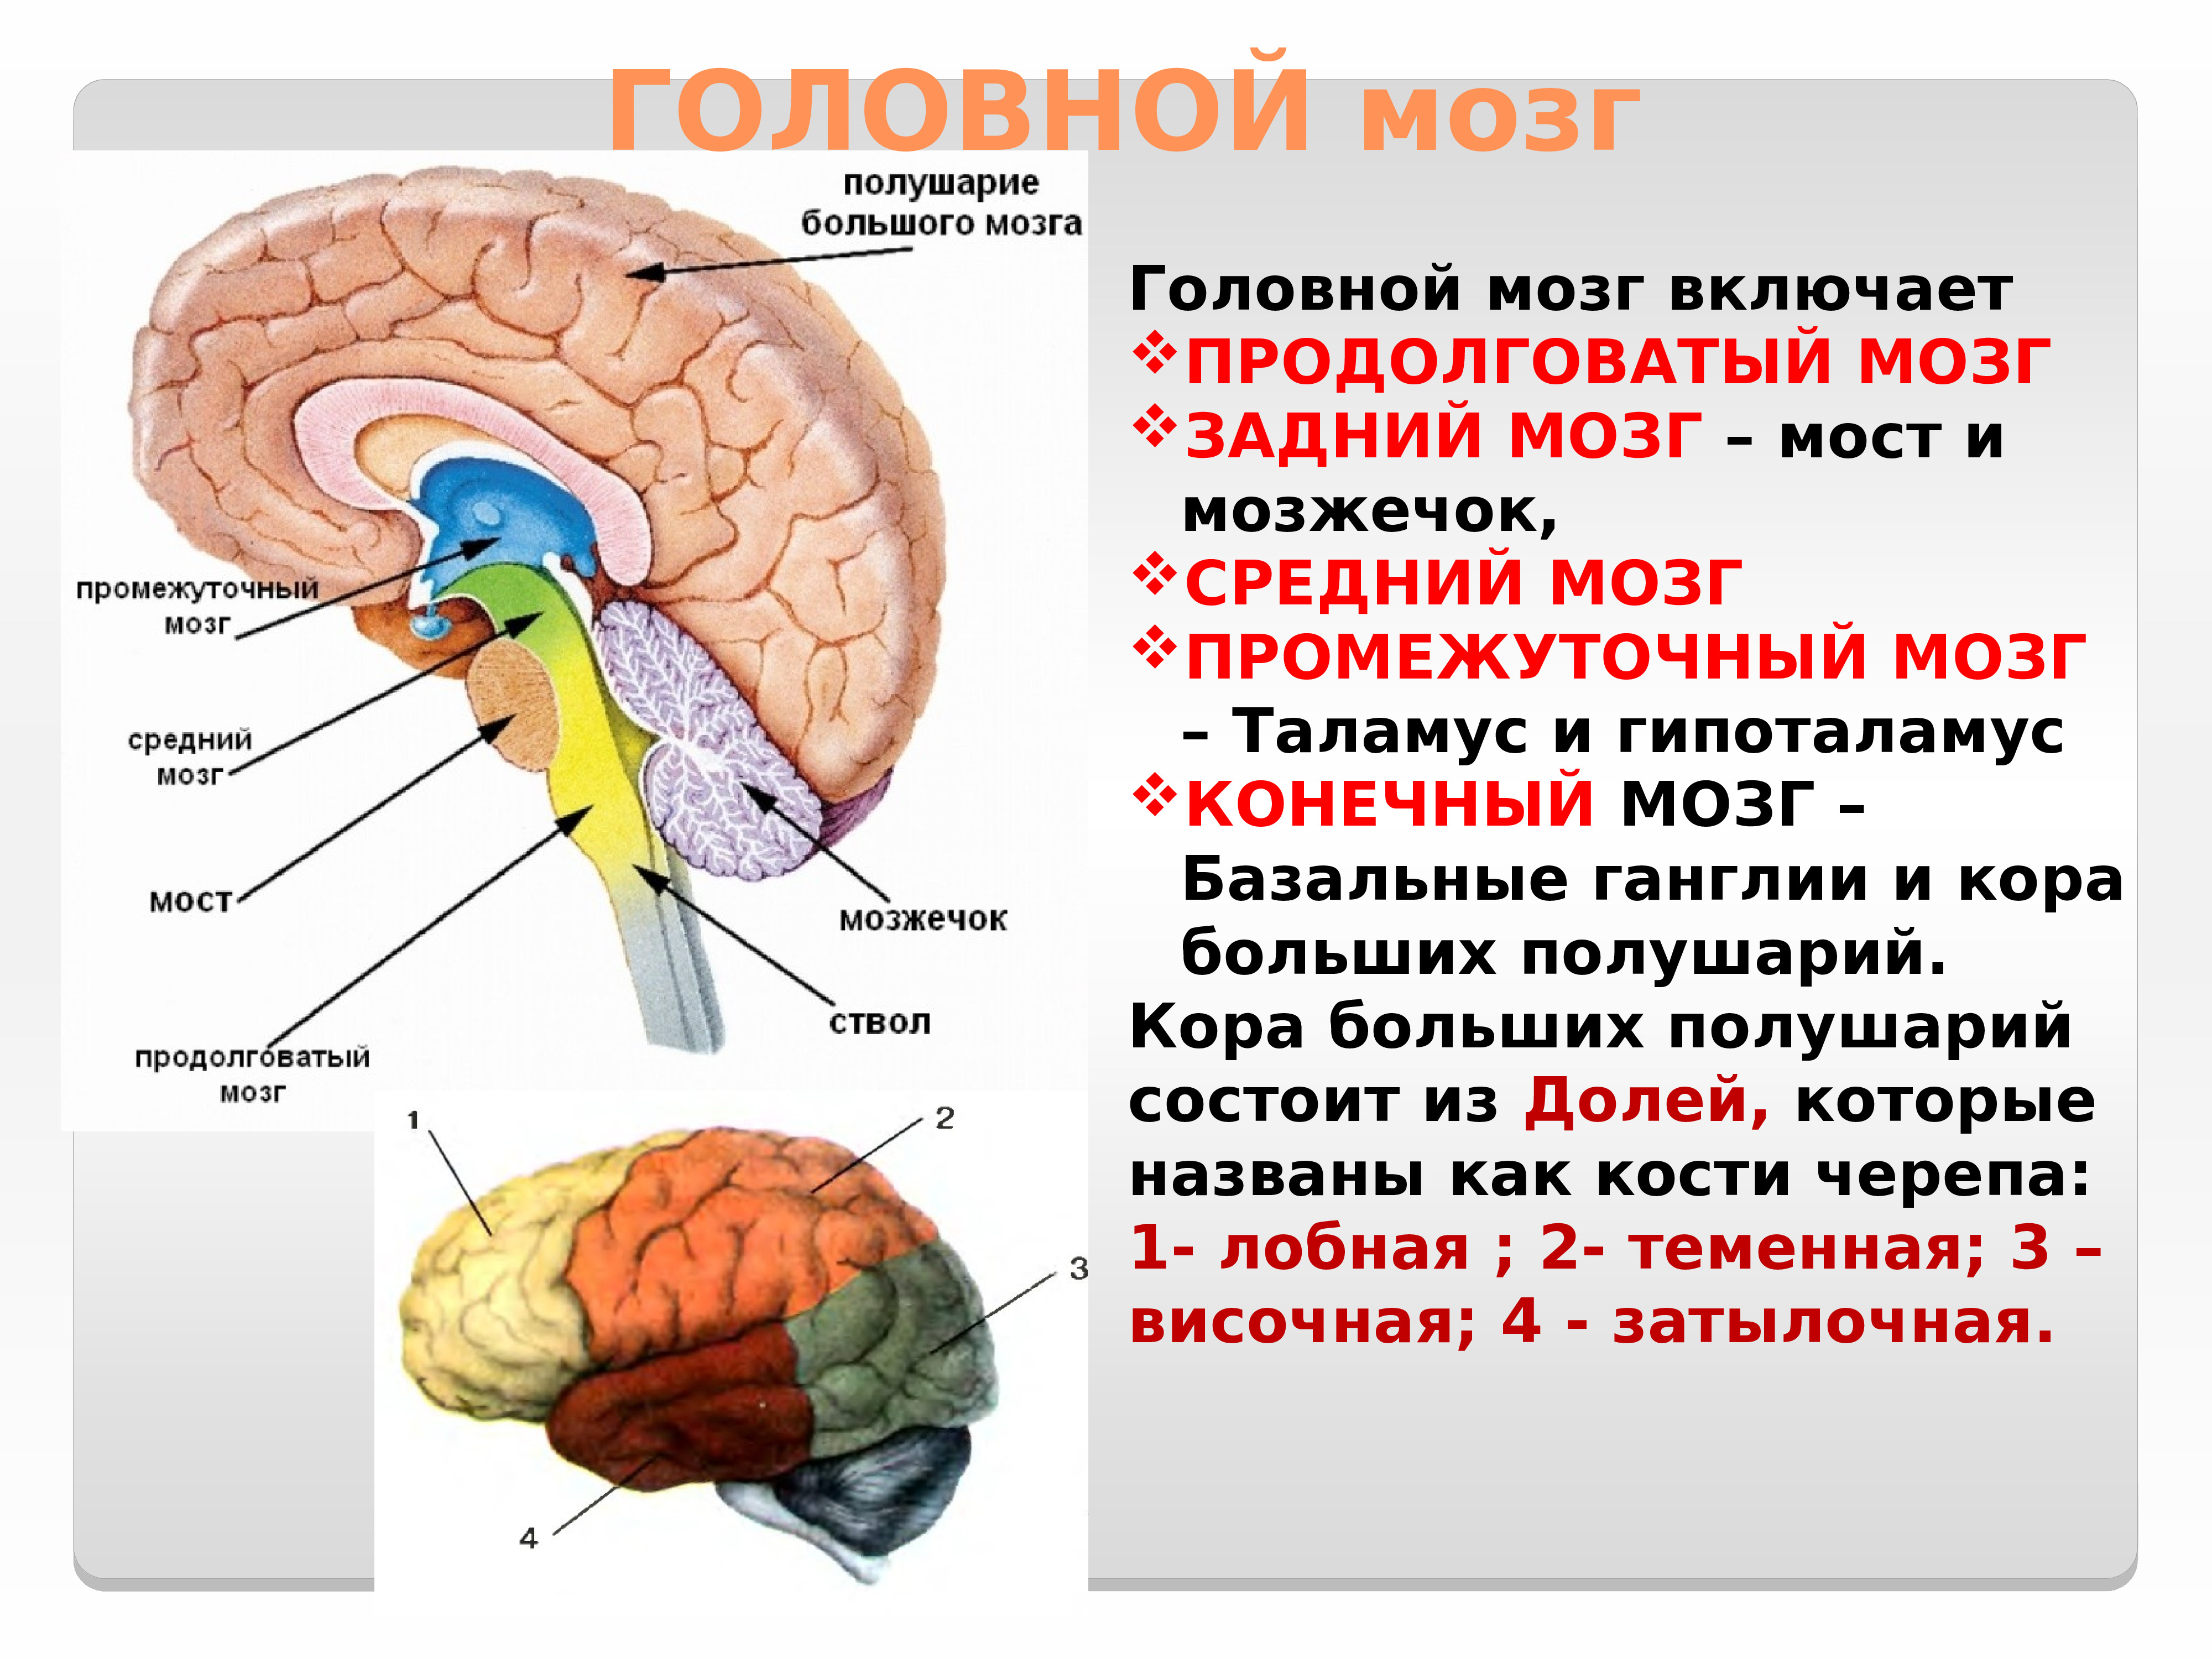 Размер переднего мозга. Отдел головного мозга продолговатый мозг промежуточный мозг. Головной мозг строение мозжечок мост. Строение головного мозга ствол мозжечок.